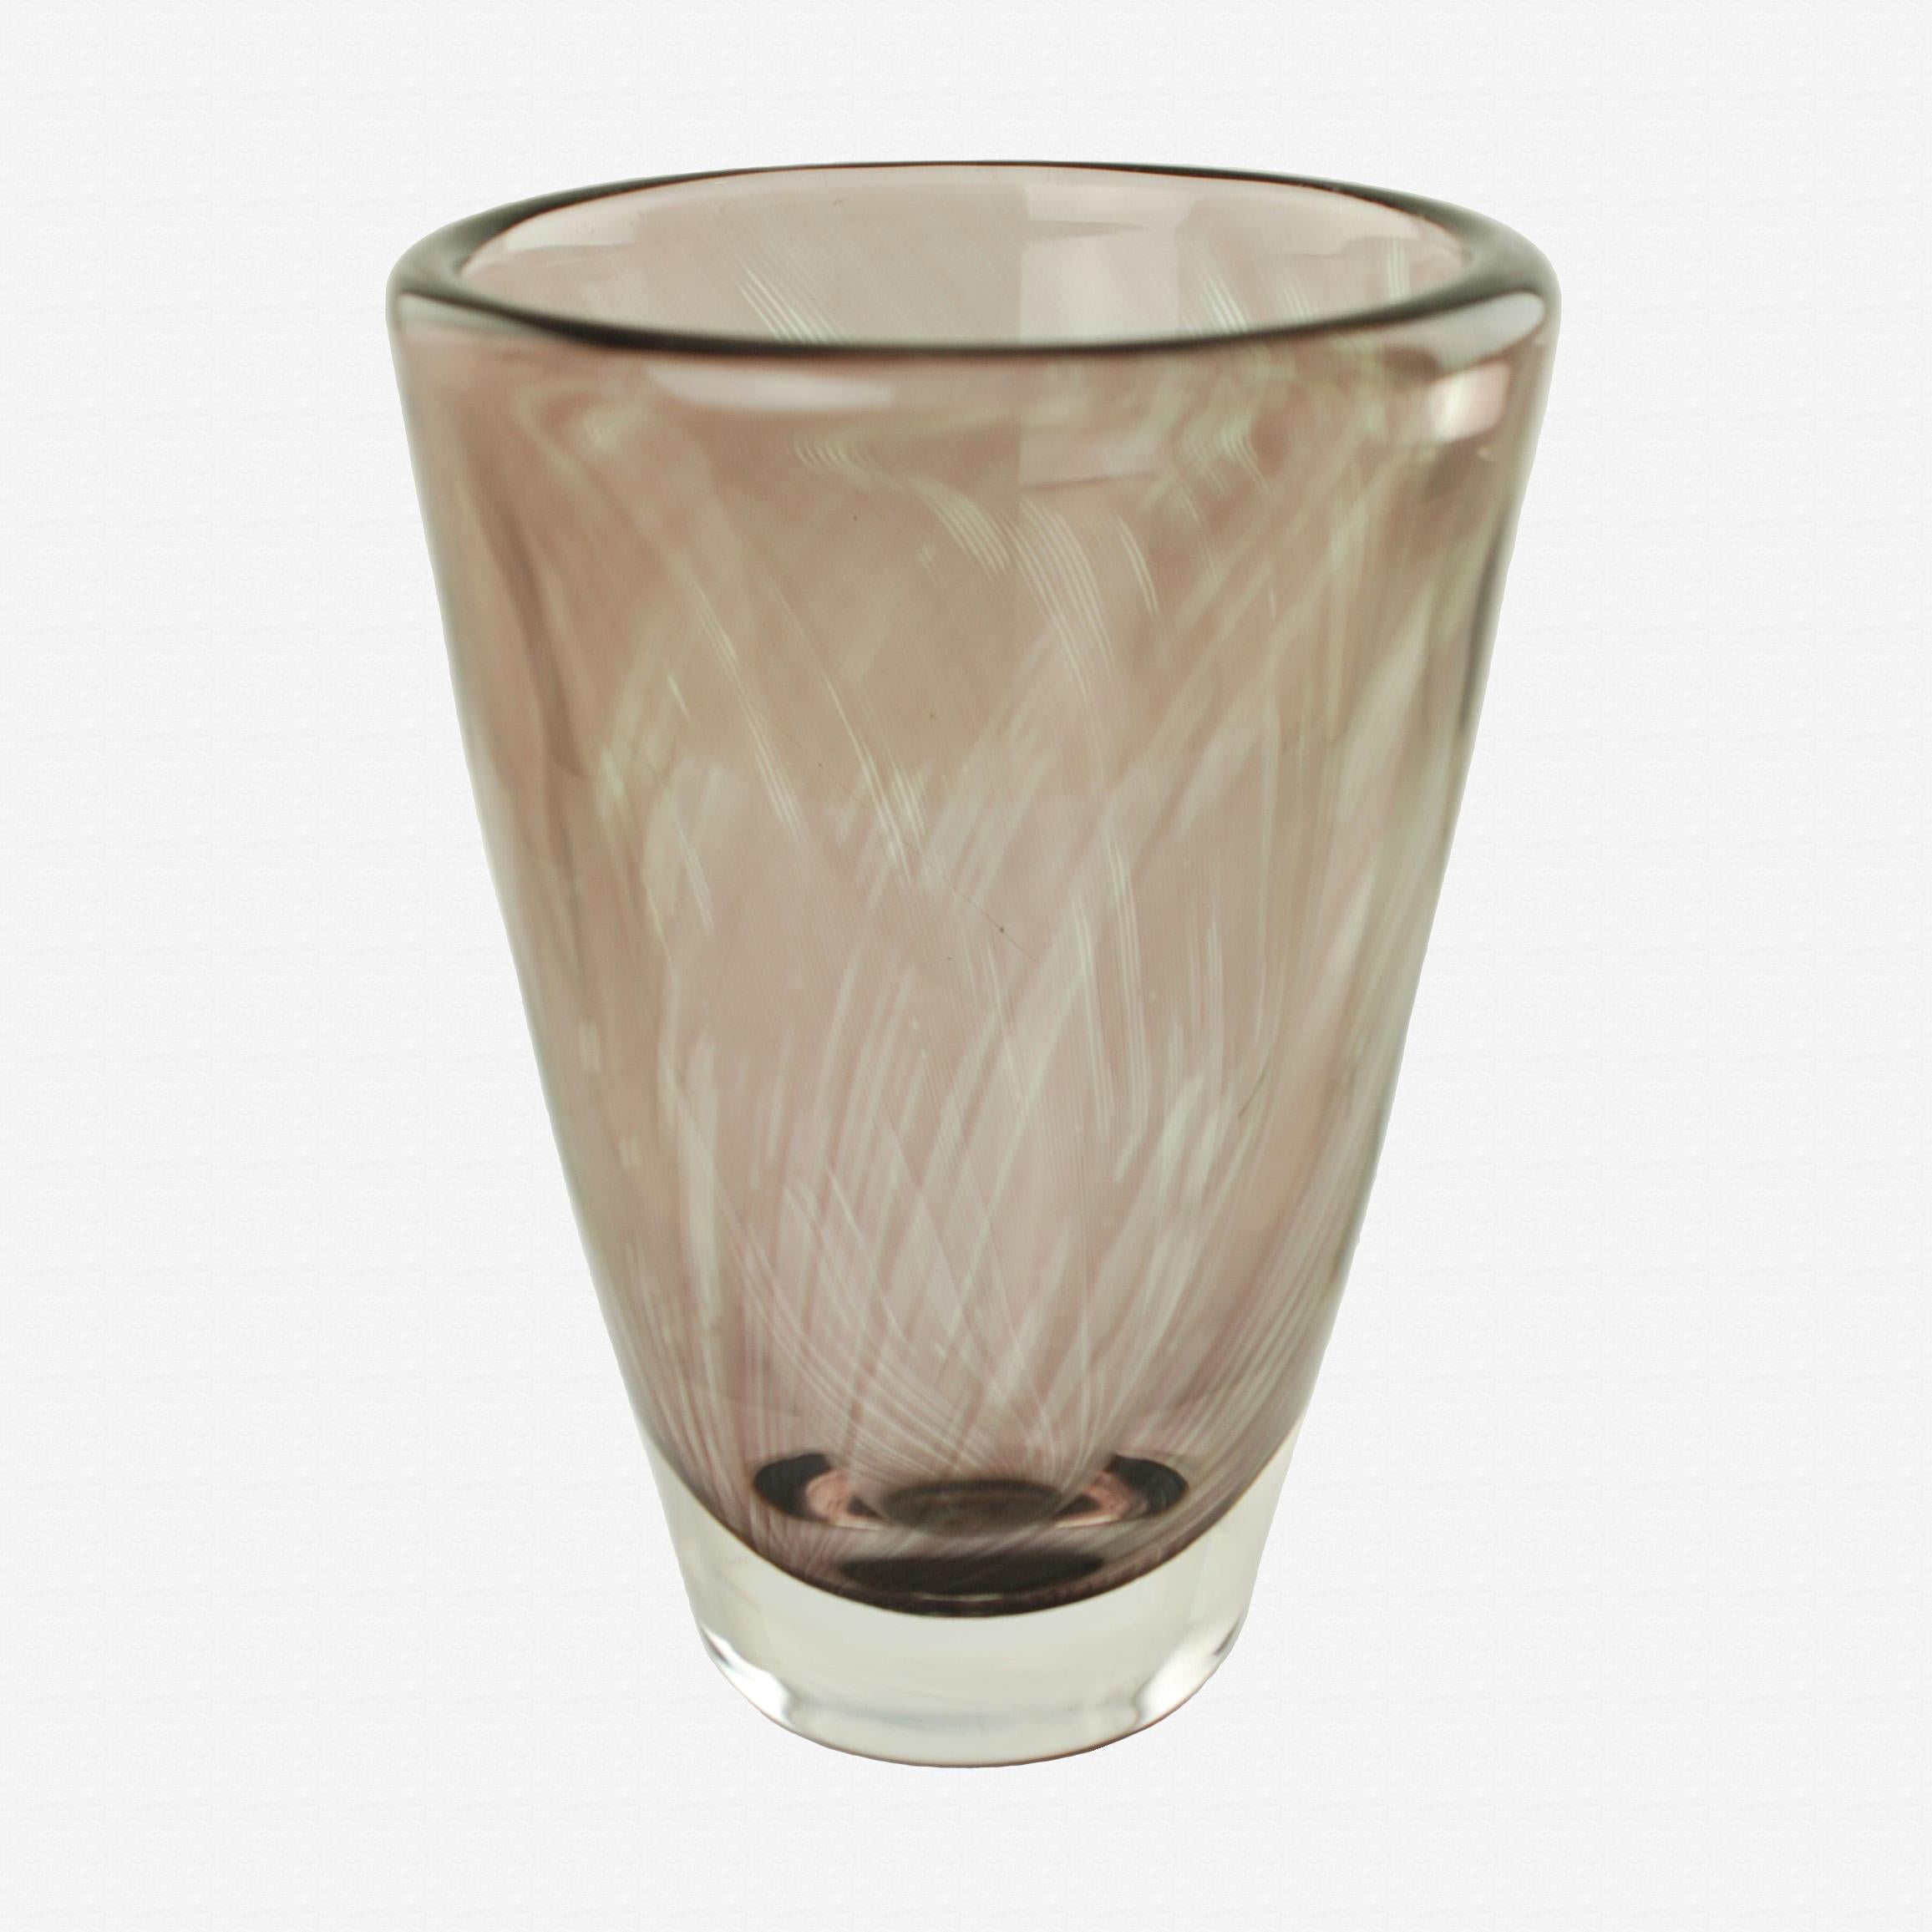 Ce lourd vase en verre Graal d'Orrefors a été conçu par le célèbre designer suédois Edvin Öhrström (1906-1994). La pièce a une forme cylindrique évasée classique et présente une épaisse couche de verre transparent sur une couleur améthyste fumée. Le